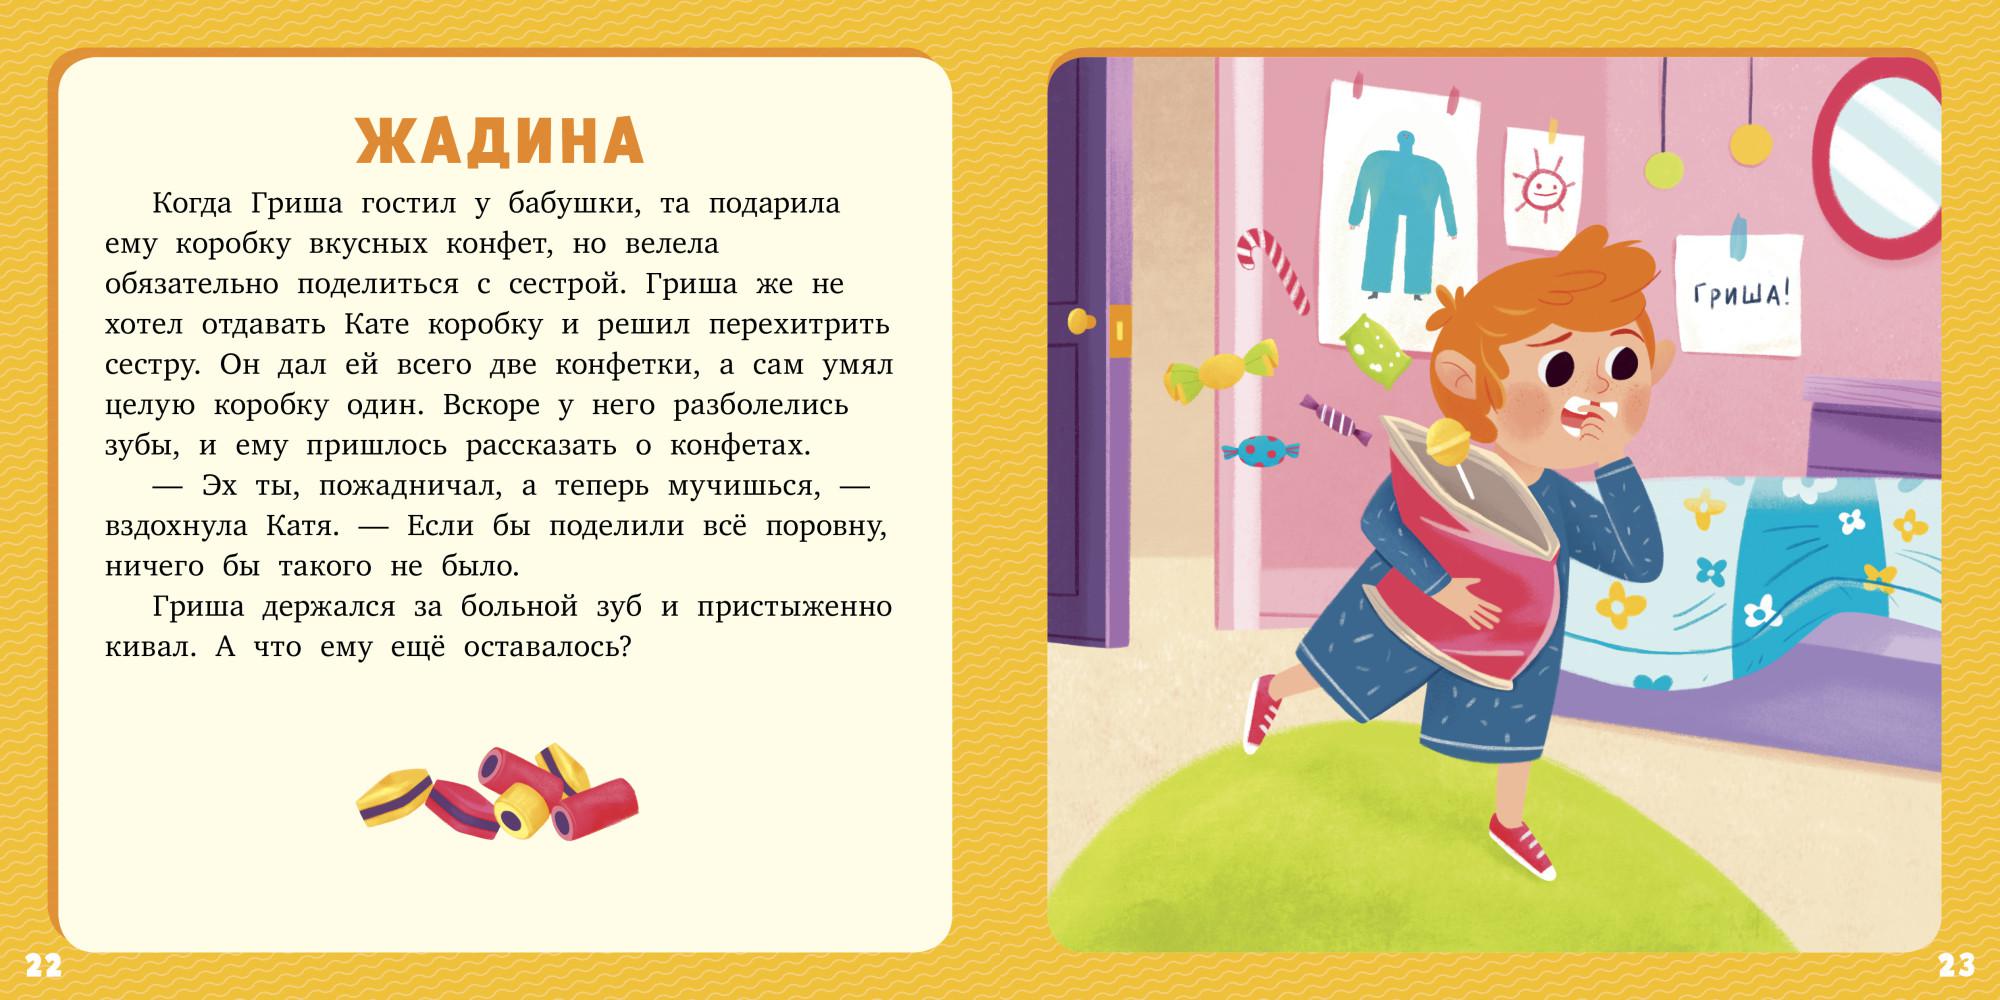 5 историй для нее. Лида Данилова 17 историй и сказок для первого чтения. Маленькие рассказы для детей. Короткие рассказы для первого чтения. Небольшие рассказы для детей.